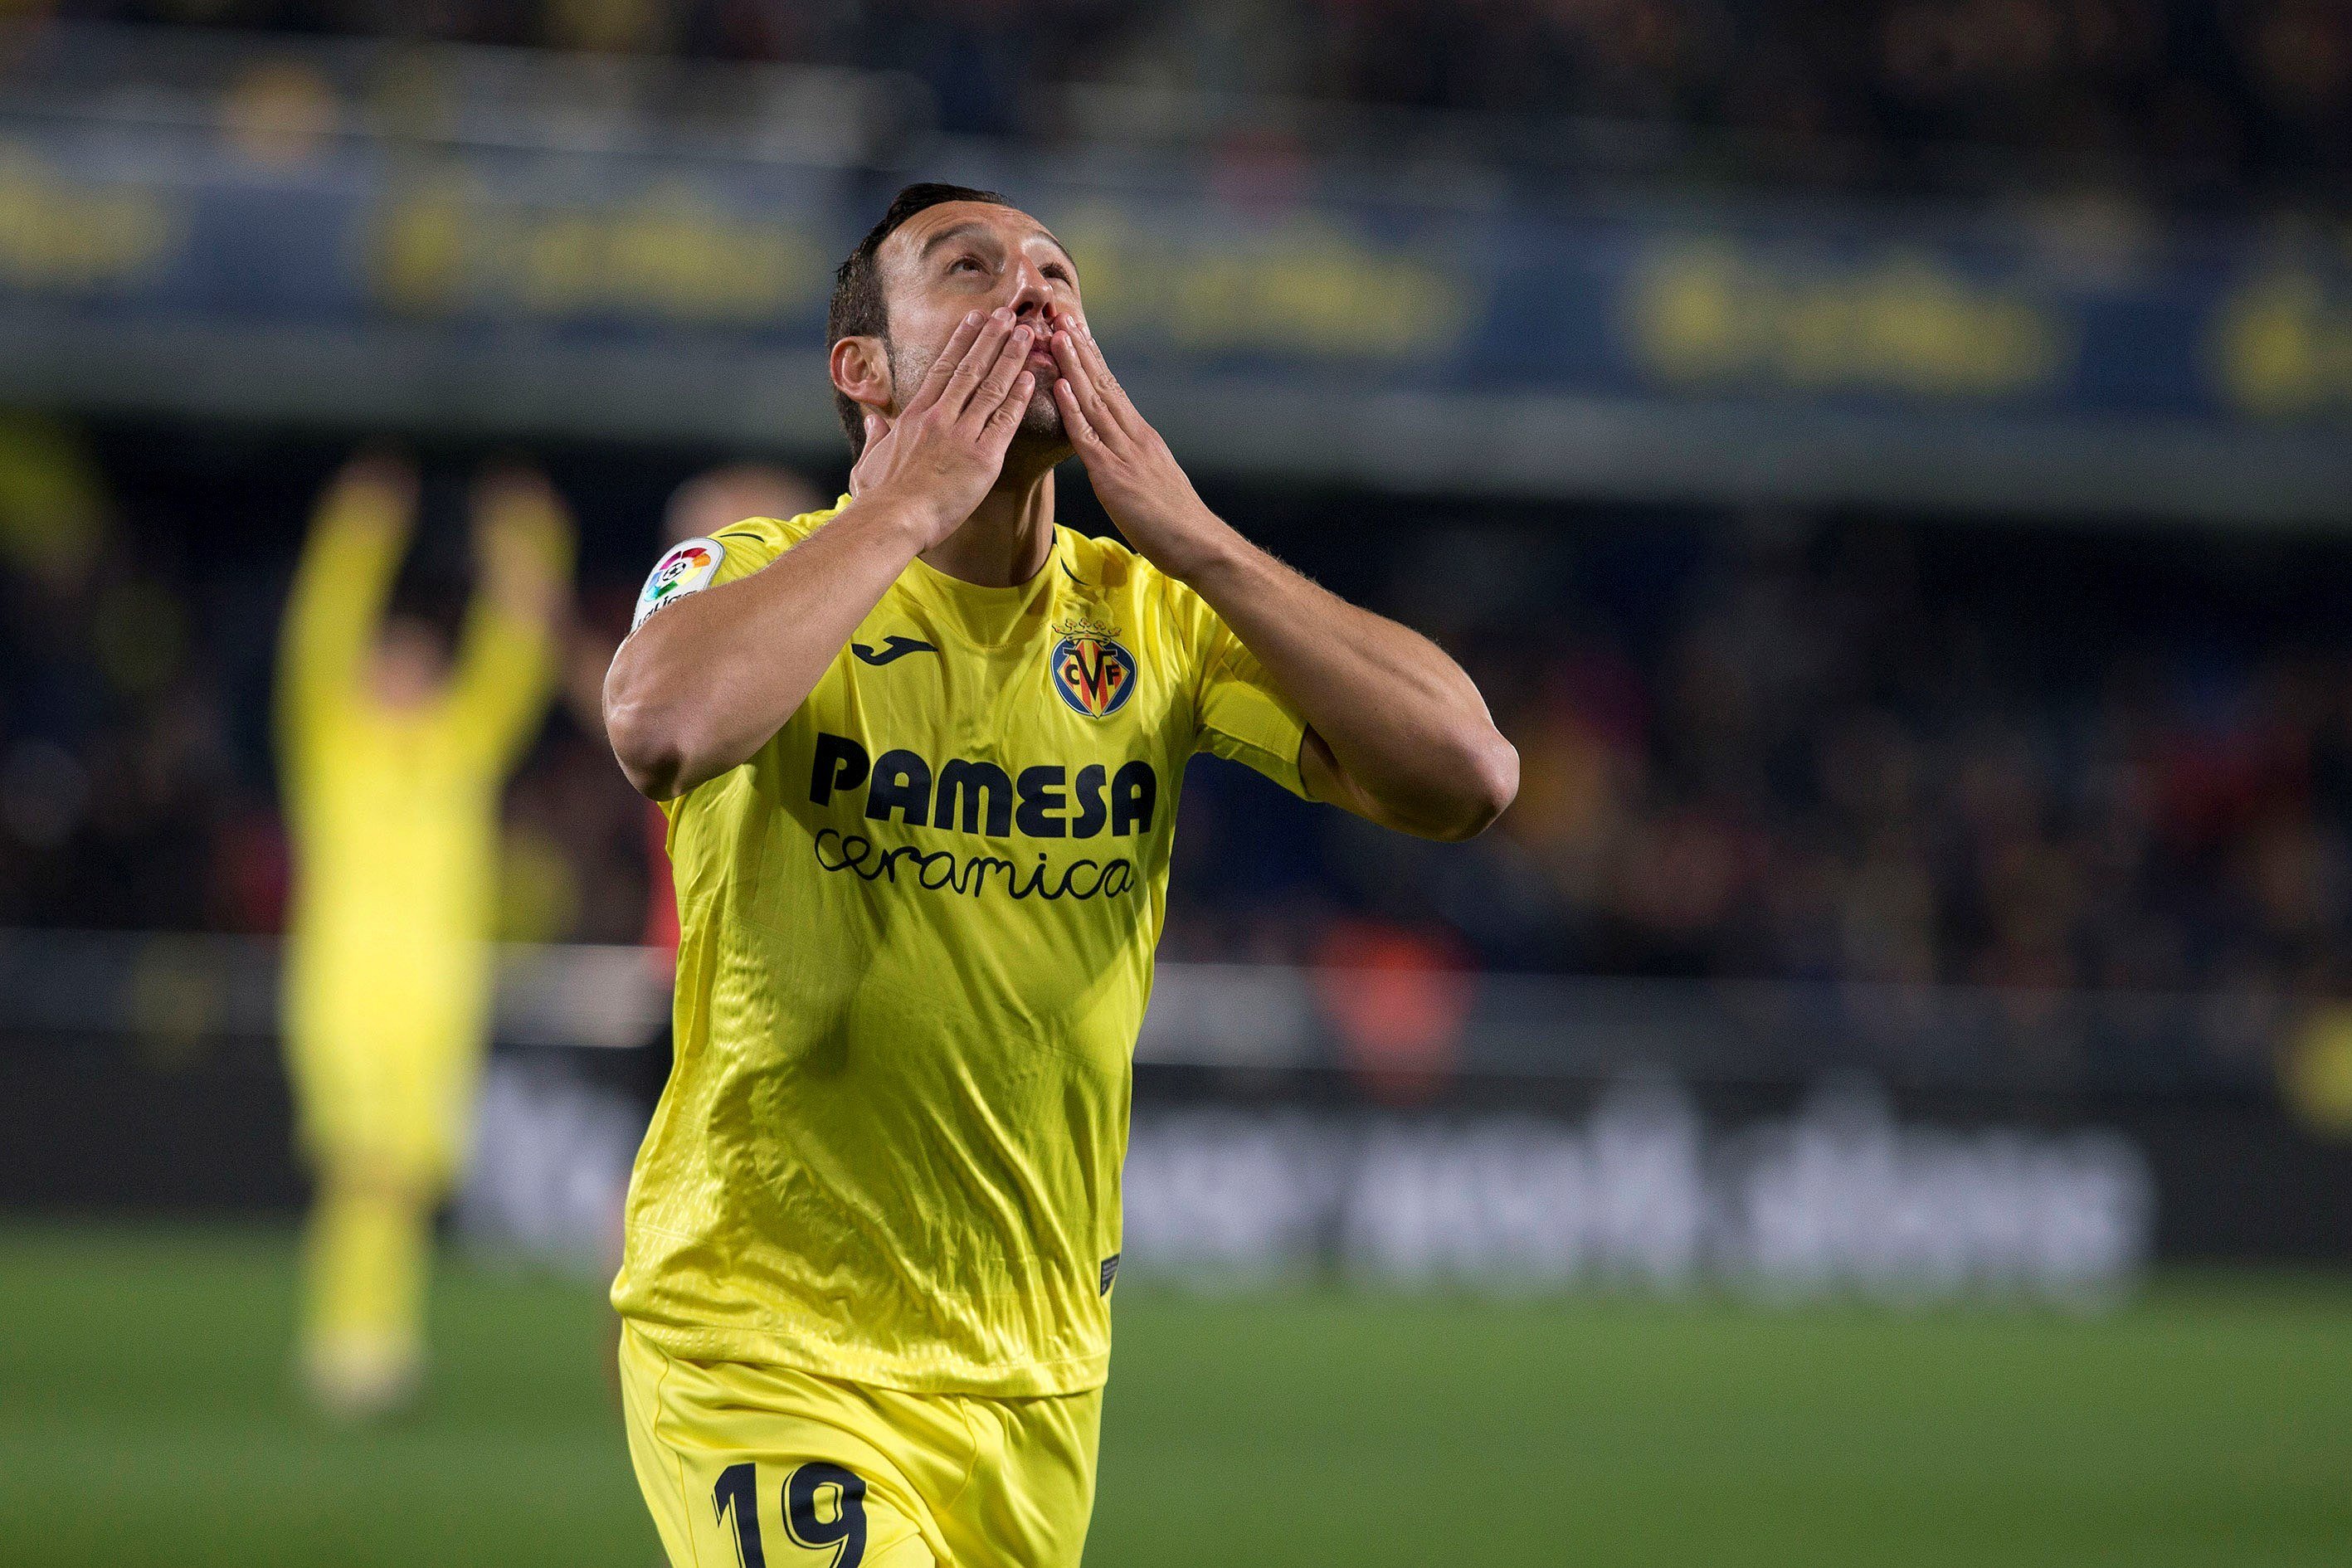 Un doblete de Santi Cazorla deja en evidencia al Madrid (2-2)